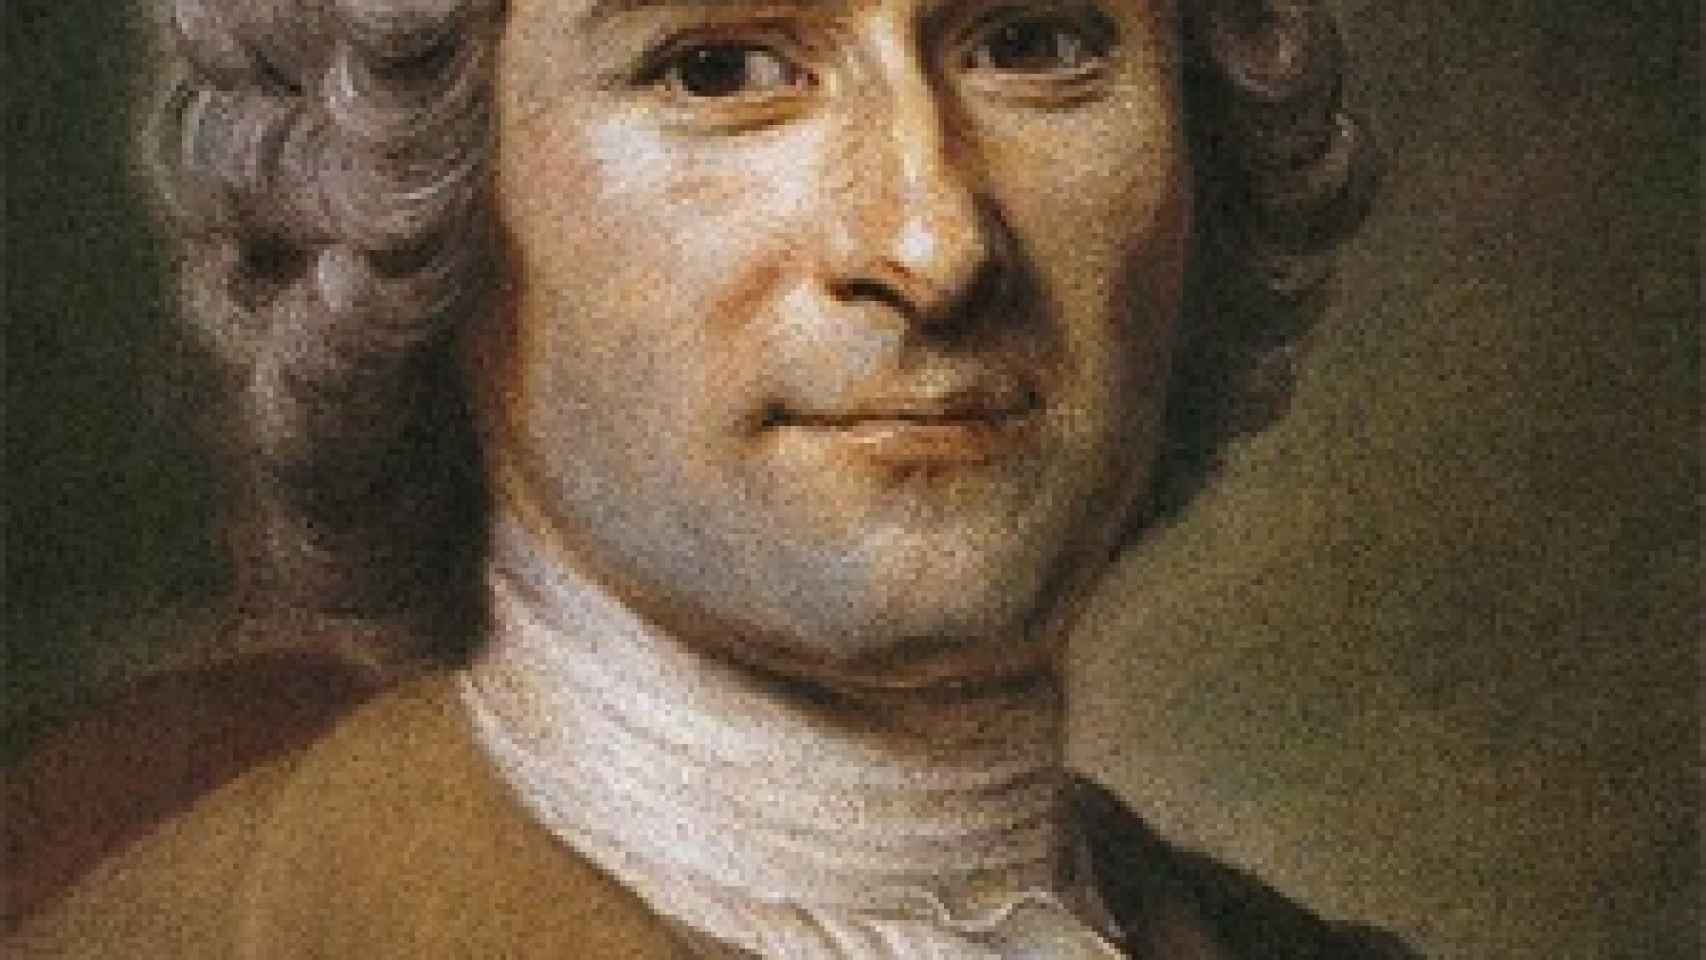 Image: Rousseau, un ilustrado seguido y perseguido